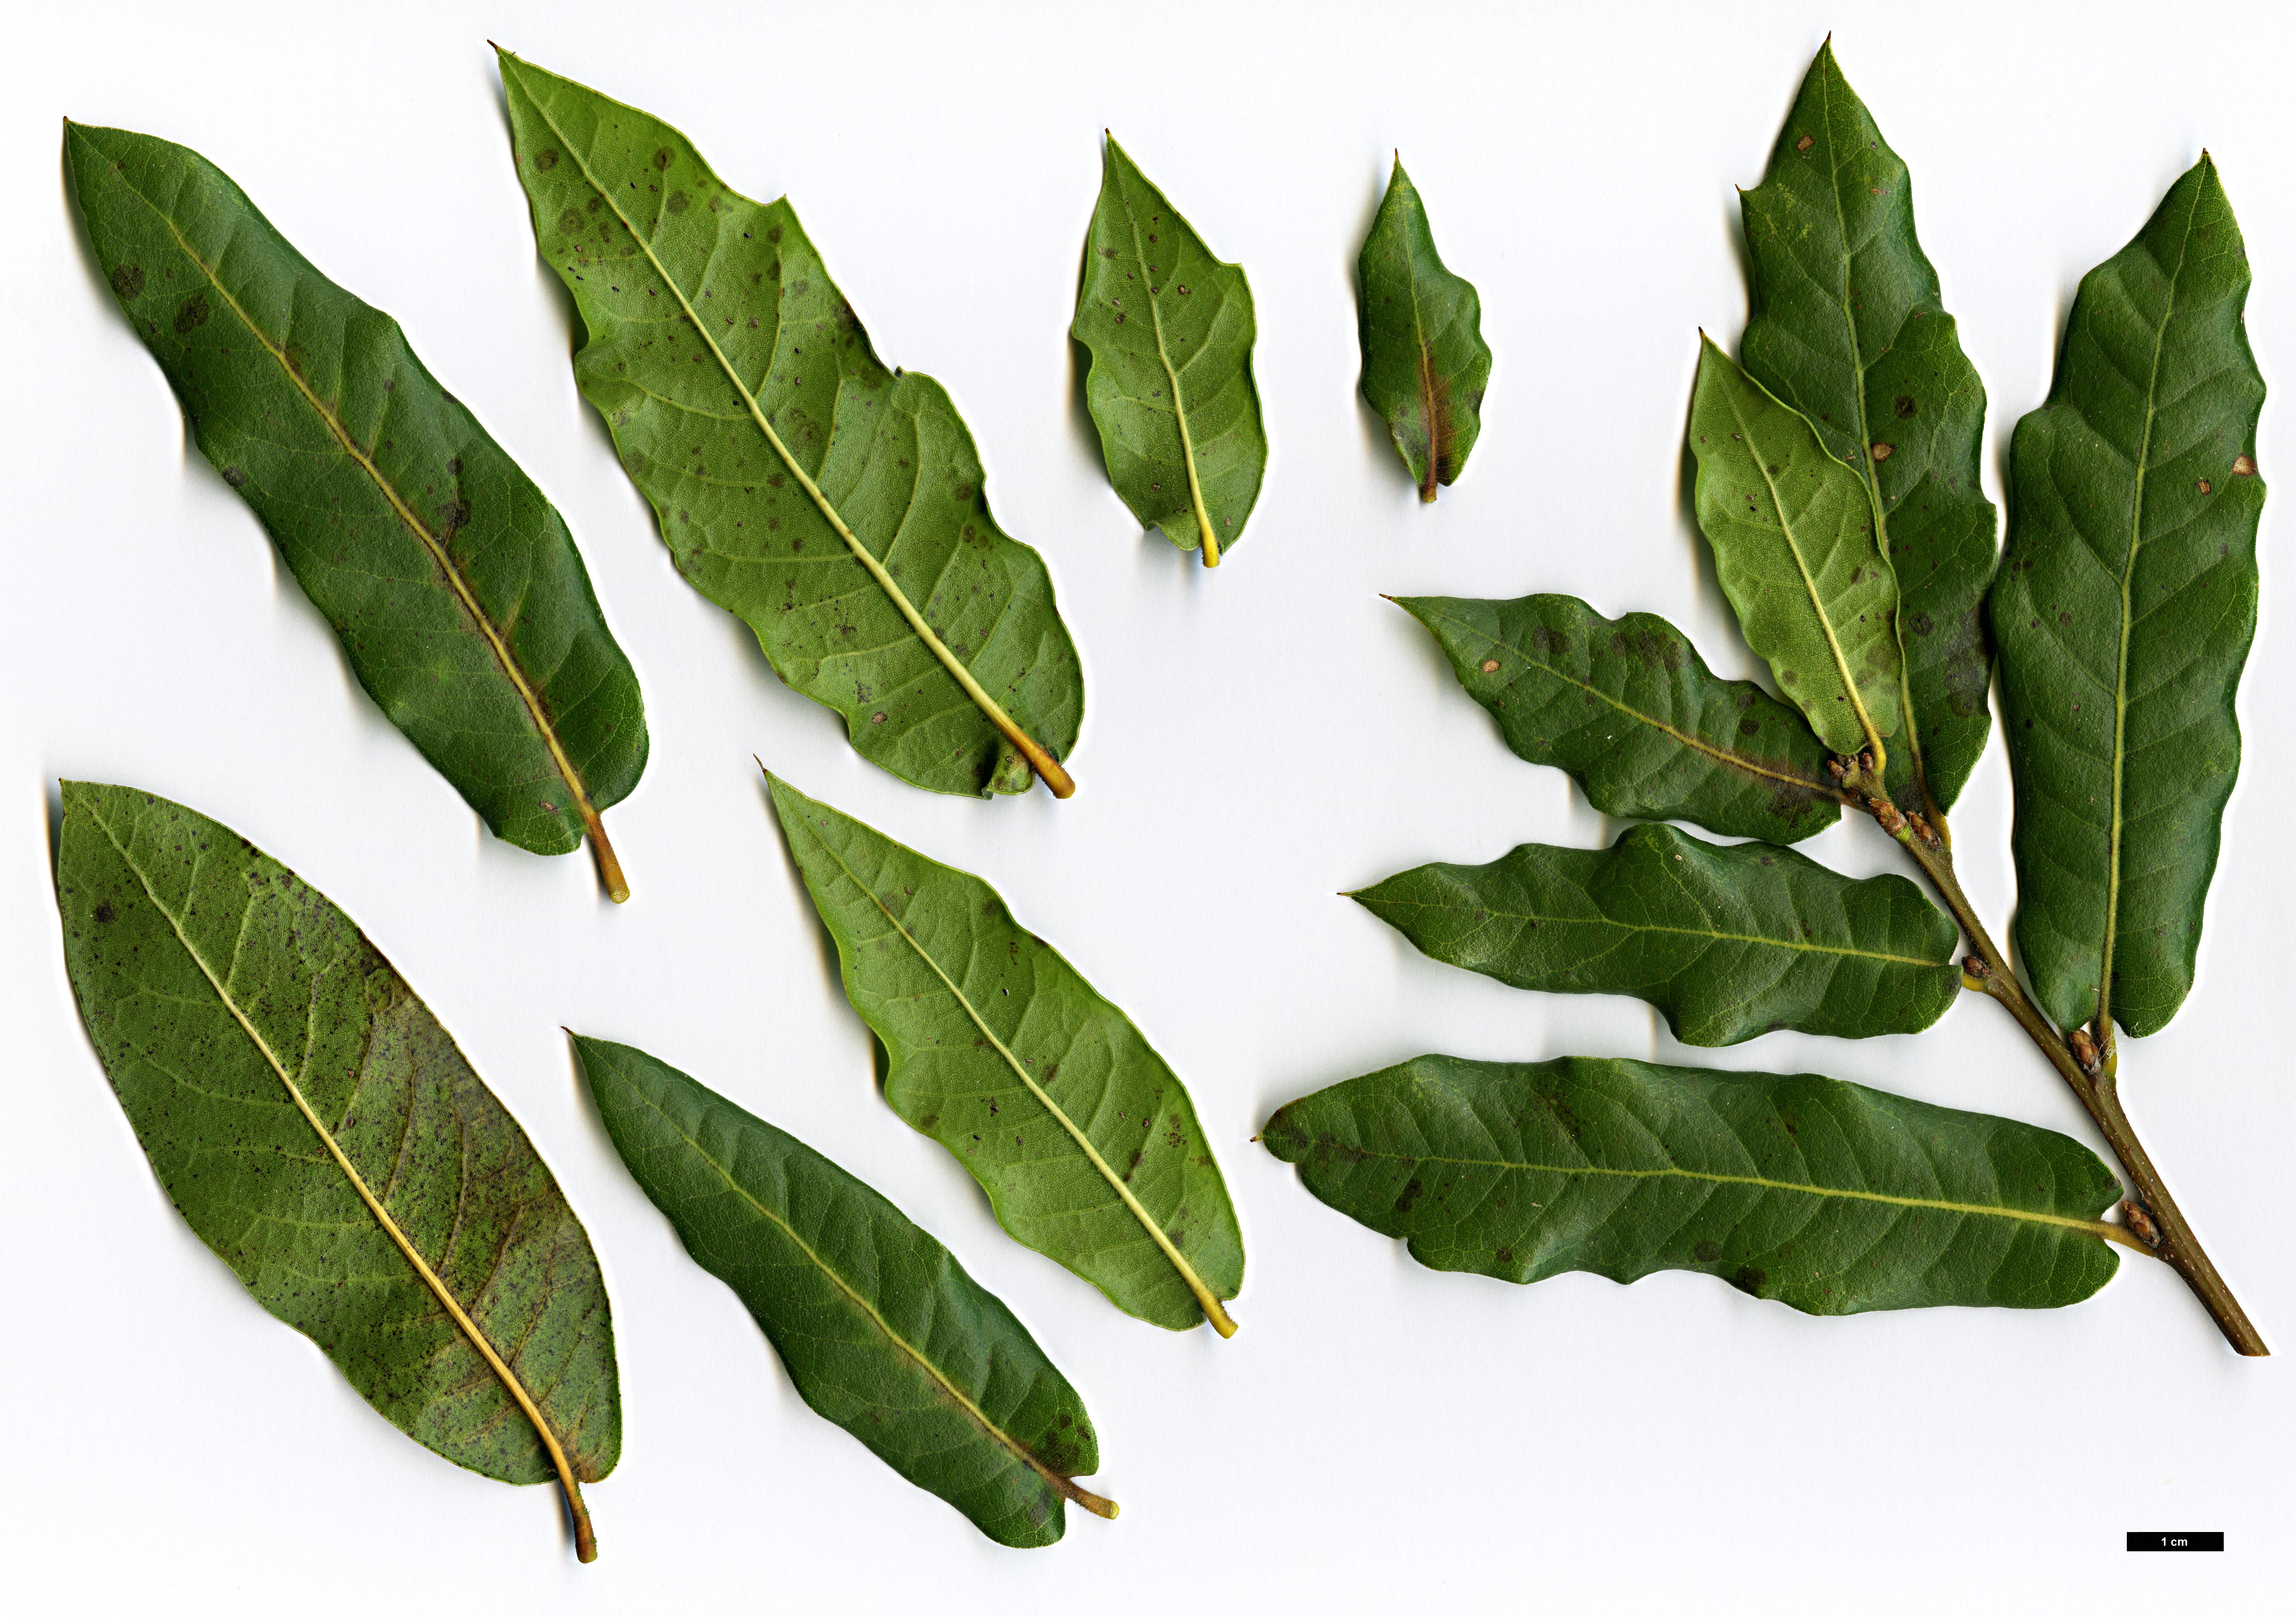 High resolution image: Family: Fagaceae - Genus: Quercus - Taxon: parvula